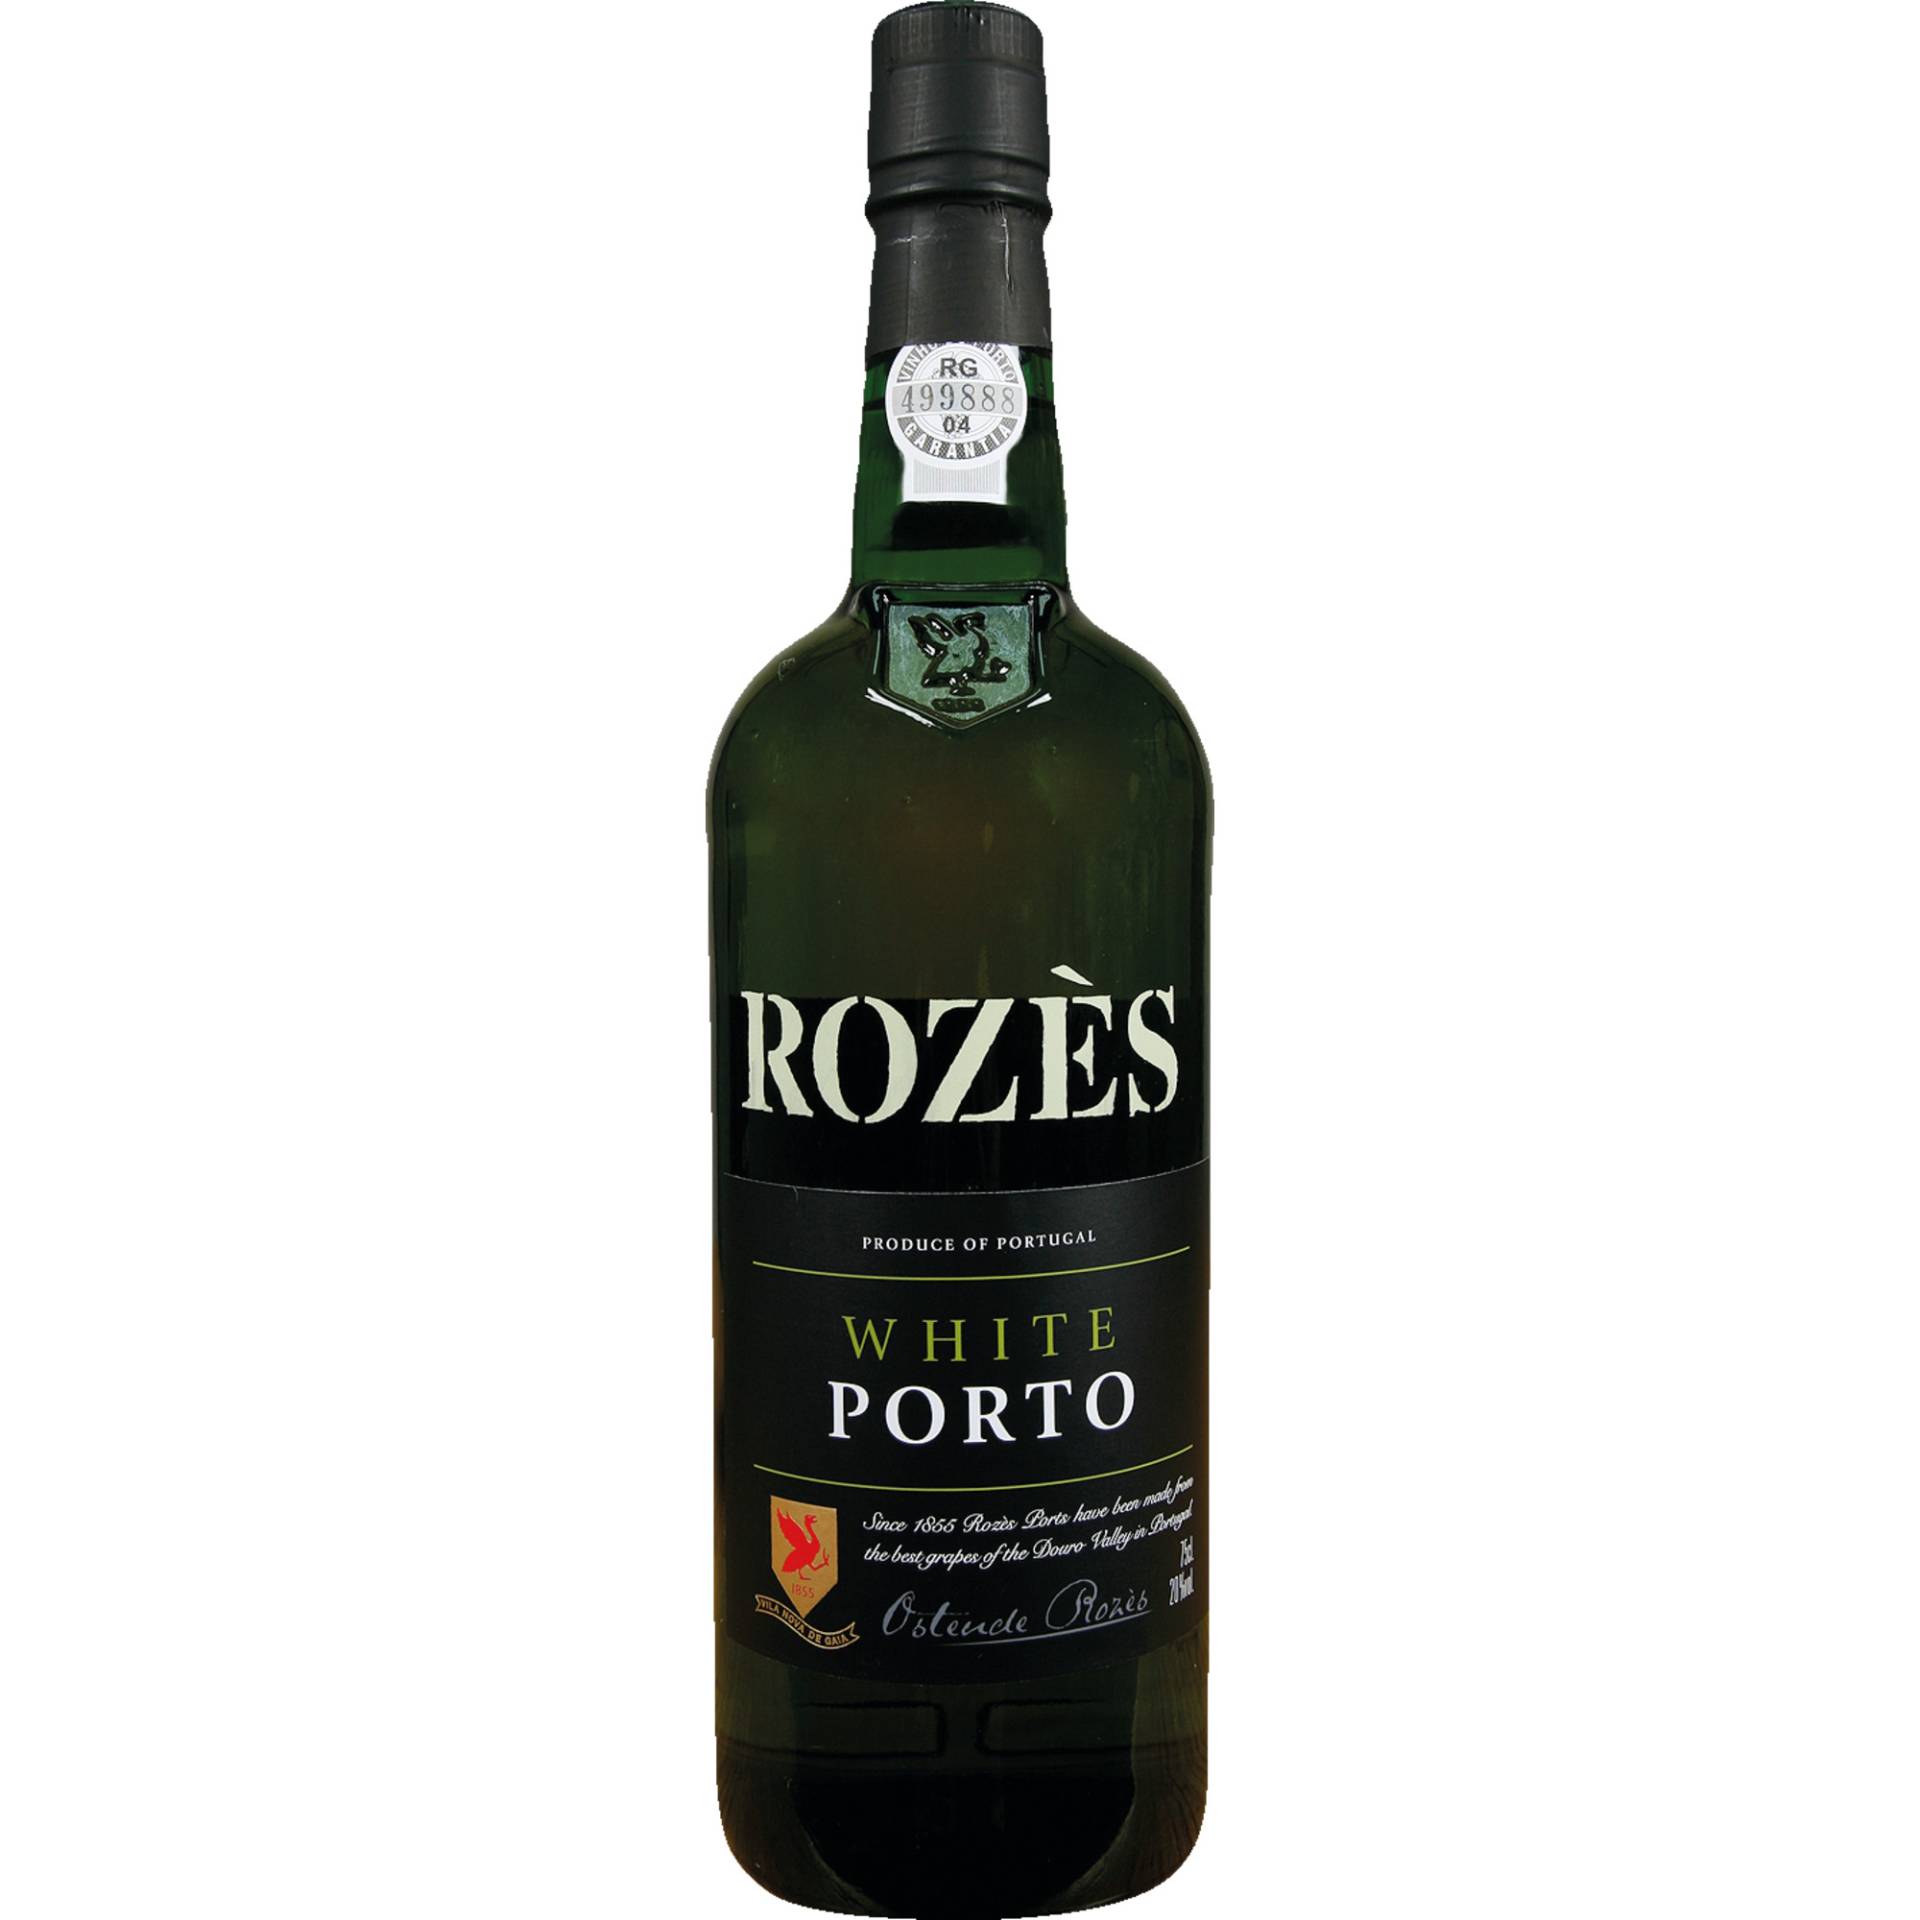 Rozès White Port, Vinho do Porto DOC, 0,75 L, 20 % Vol., Douro, Spirituosen von Rozès S.A. R. Cândido dos Reis 526 4400 Vila Nova de Gaia Portugal